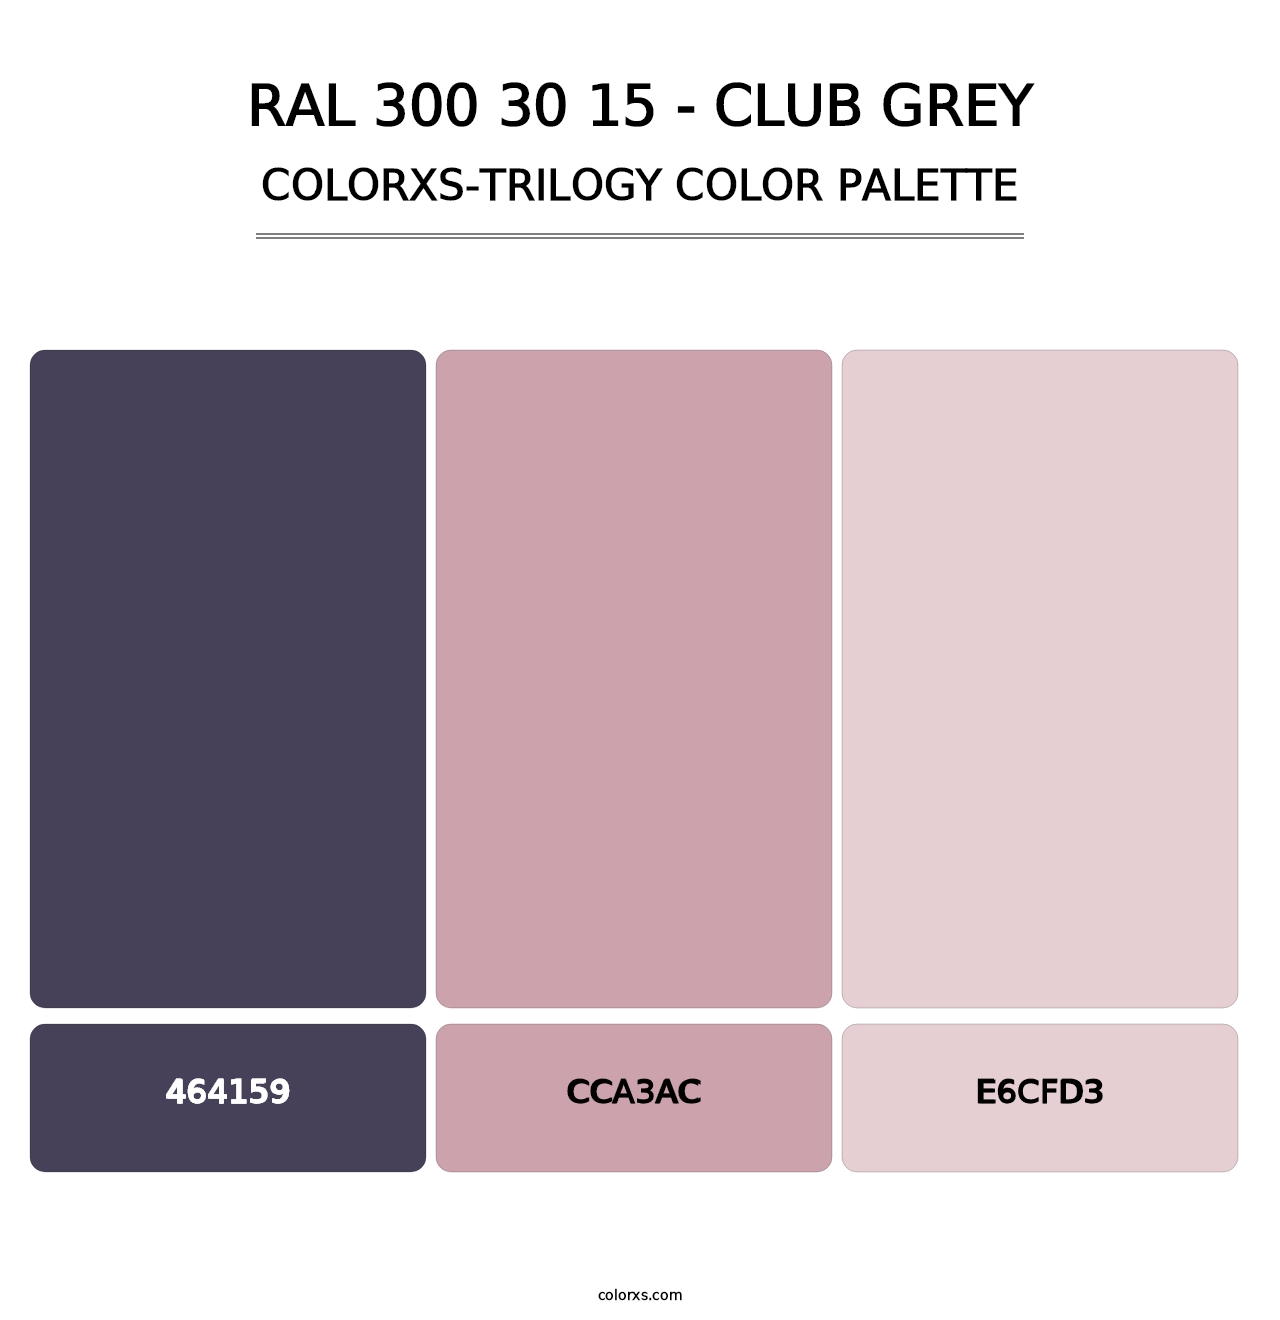 RAL 300 30 15 - Club Grey - Colorxs Trilogy Palette